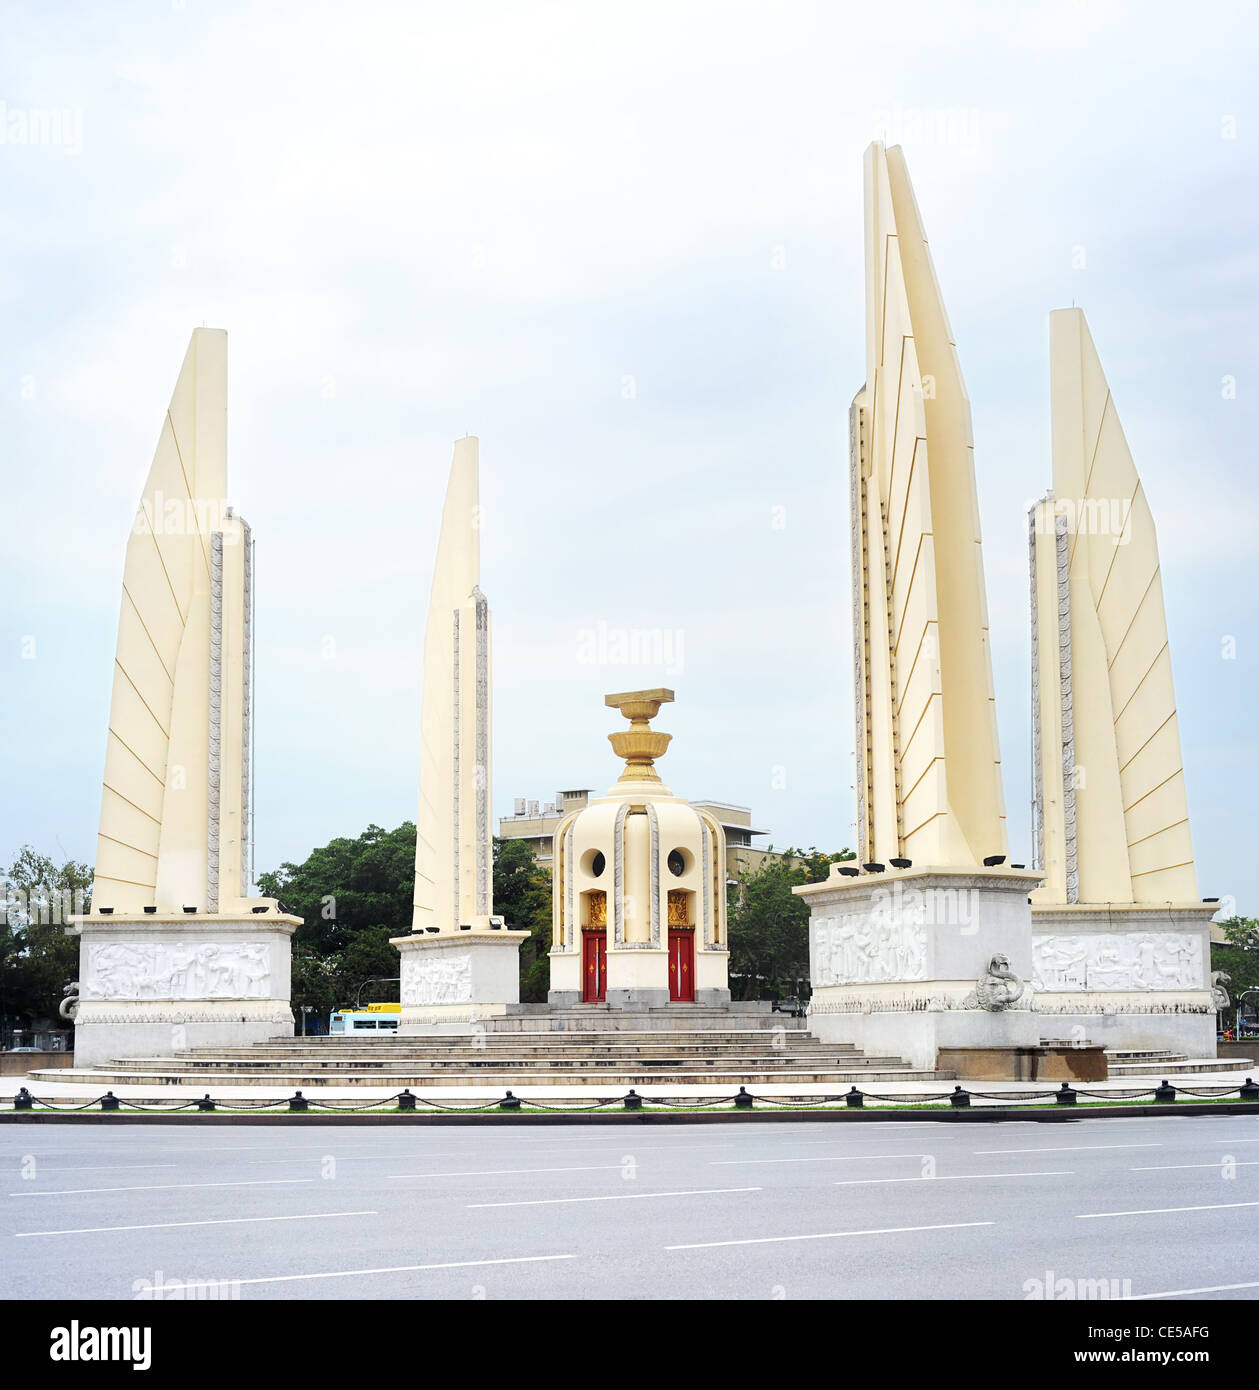 La democrazia è un monumento (Thai: Anusawari Prachathipatai) è un monumento pubblico nel centro di Bangkok, capitale della Thailandia Foto Stock